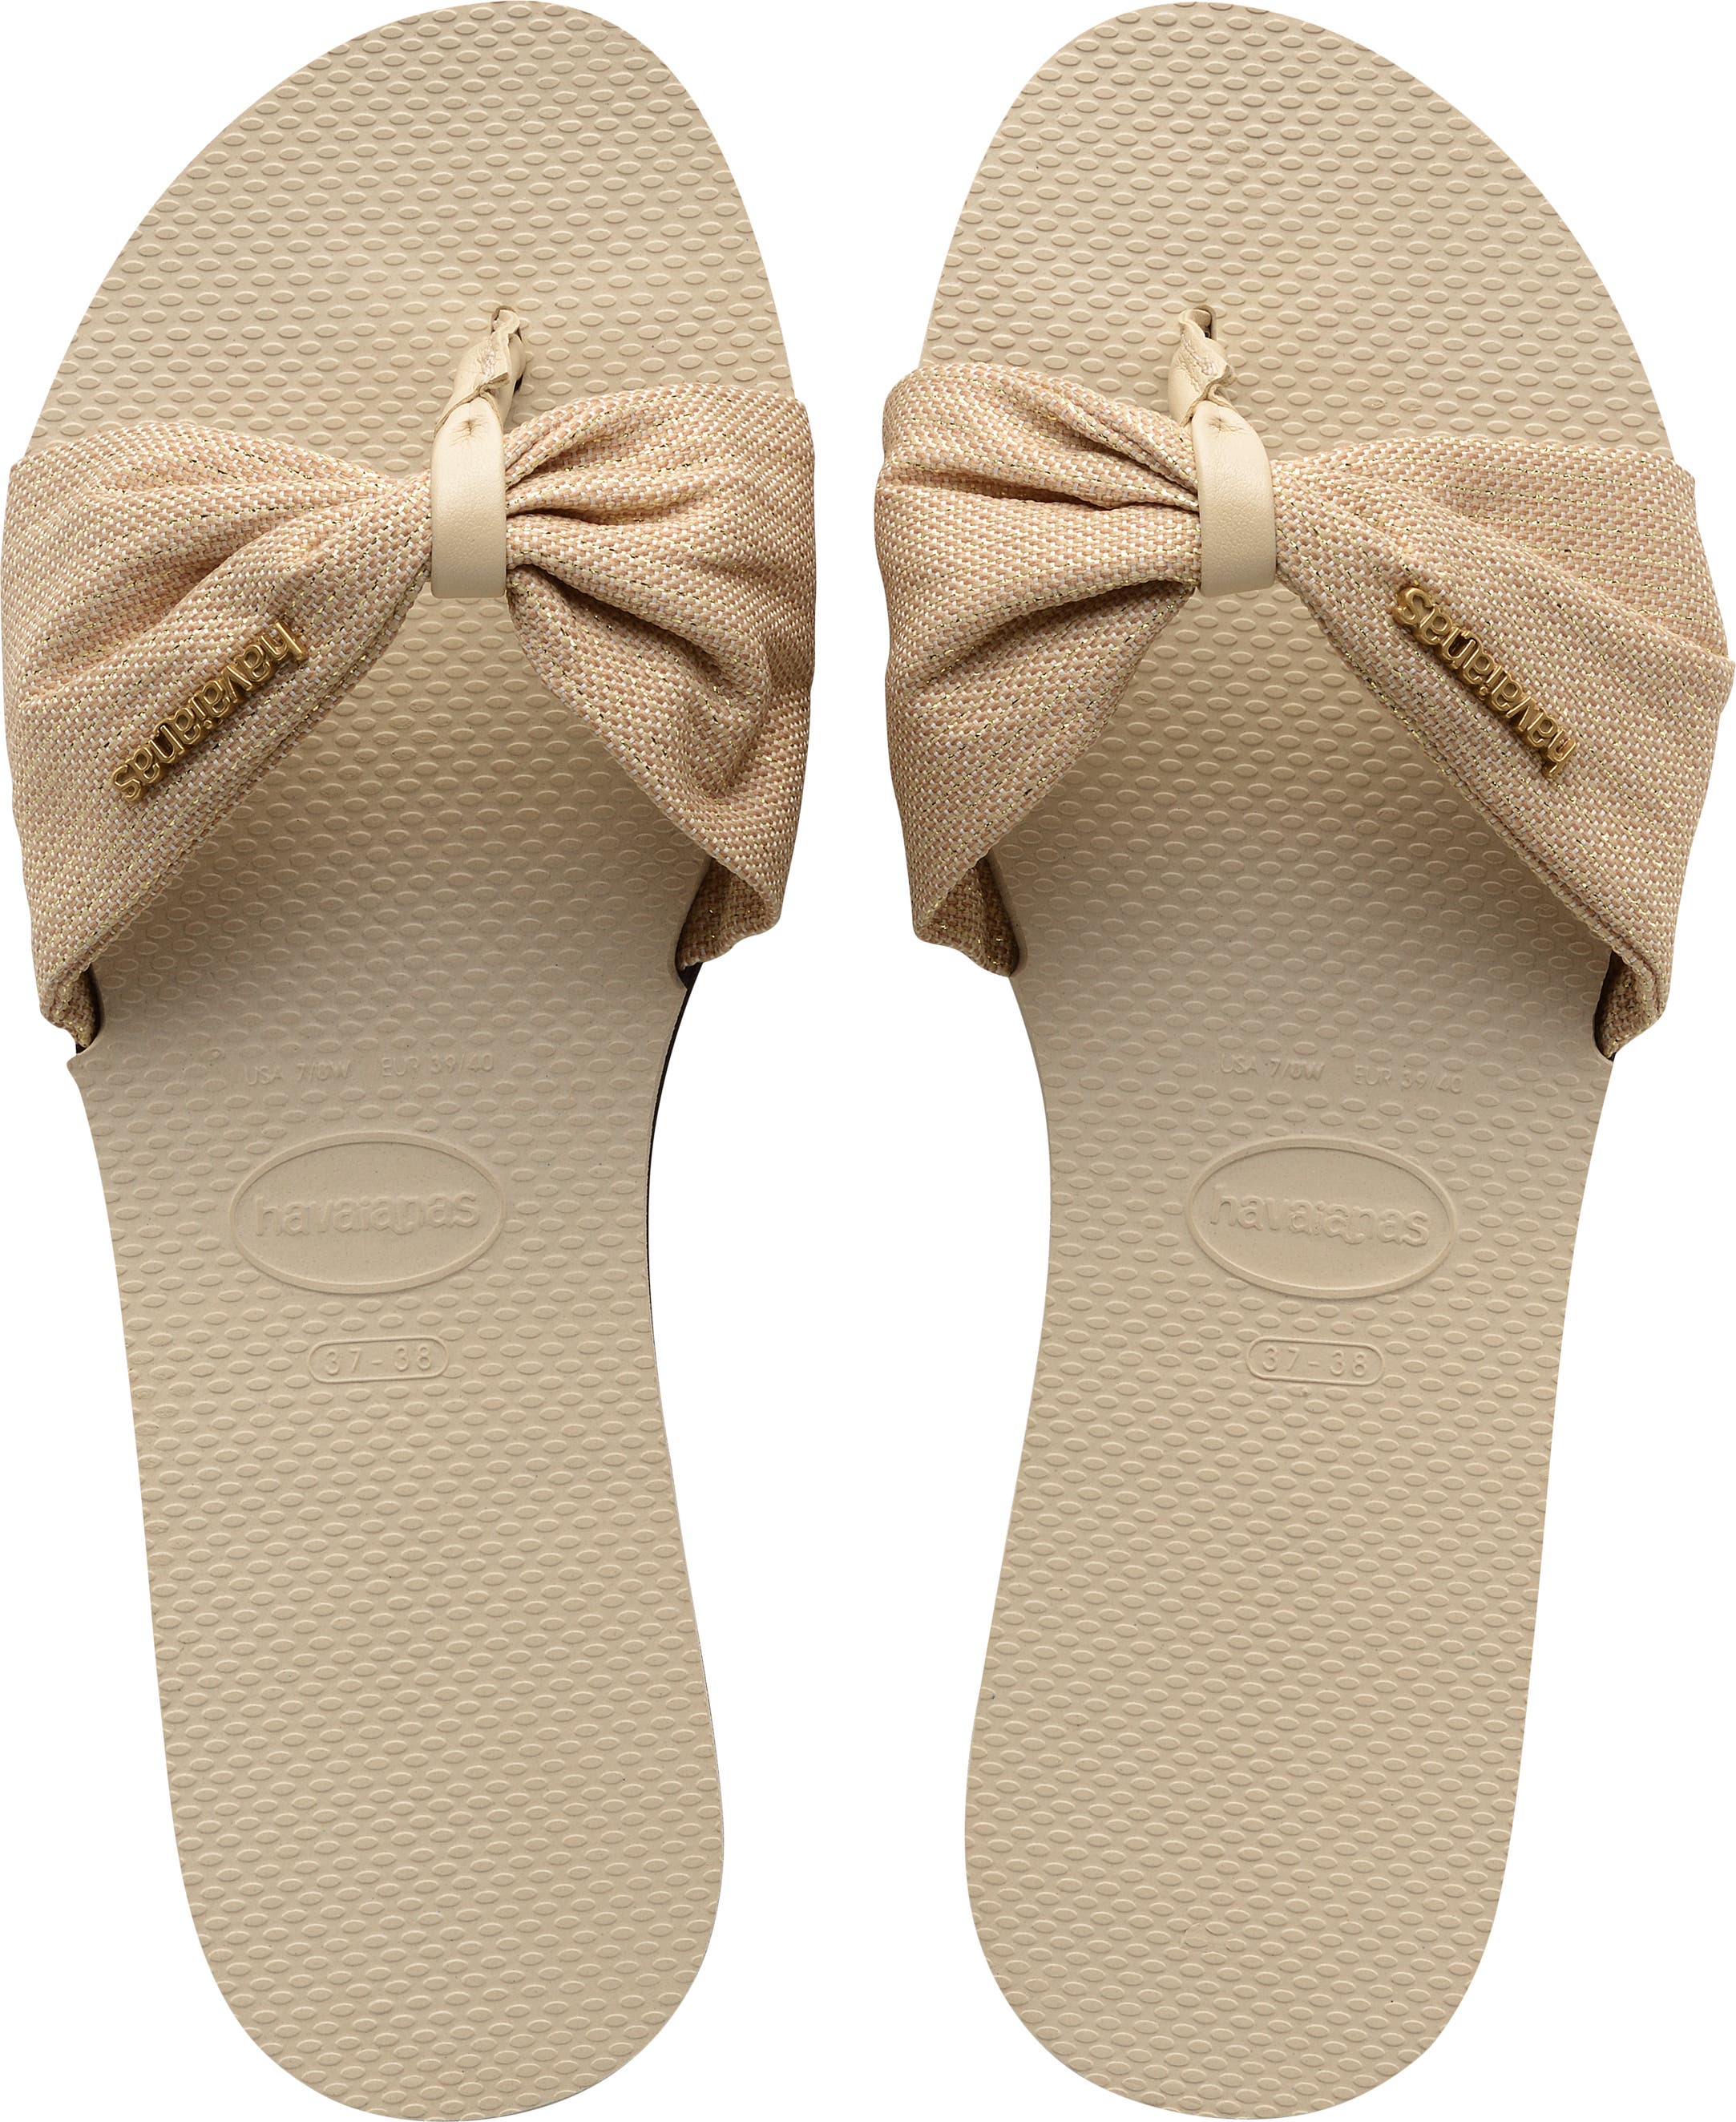 24445円 【海外正規品】 送料無料 Ancient Greek Sandals レディース 女性用 シューズ 靴 サンダル Polytimi - Silver